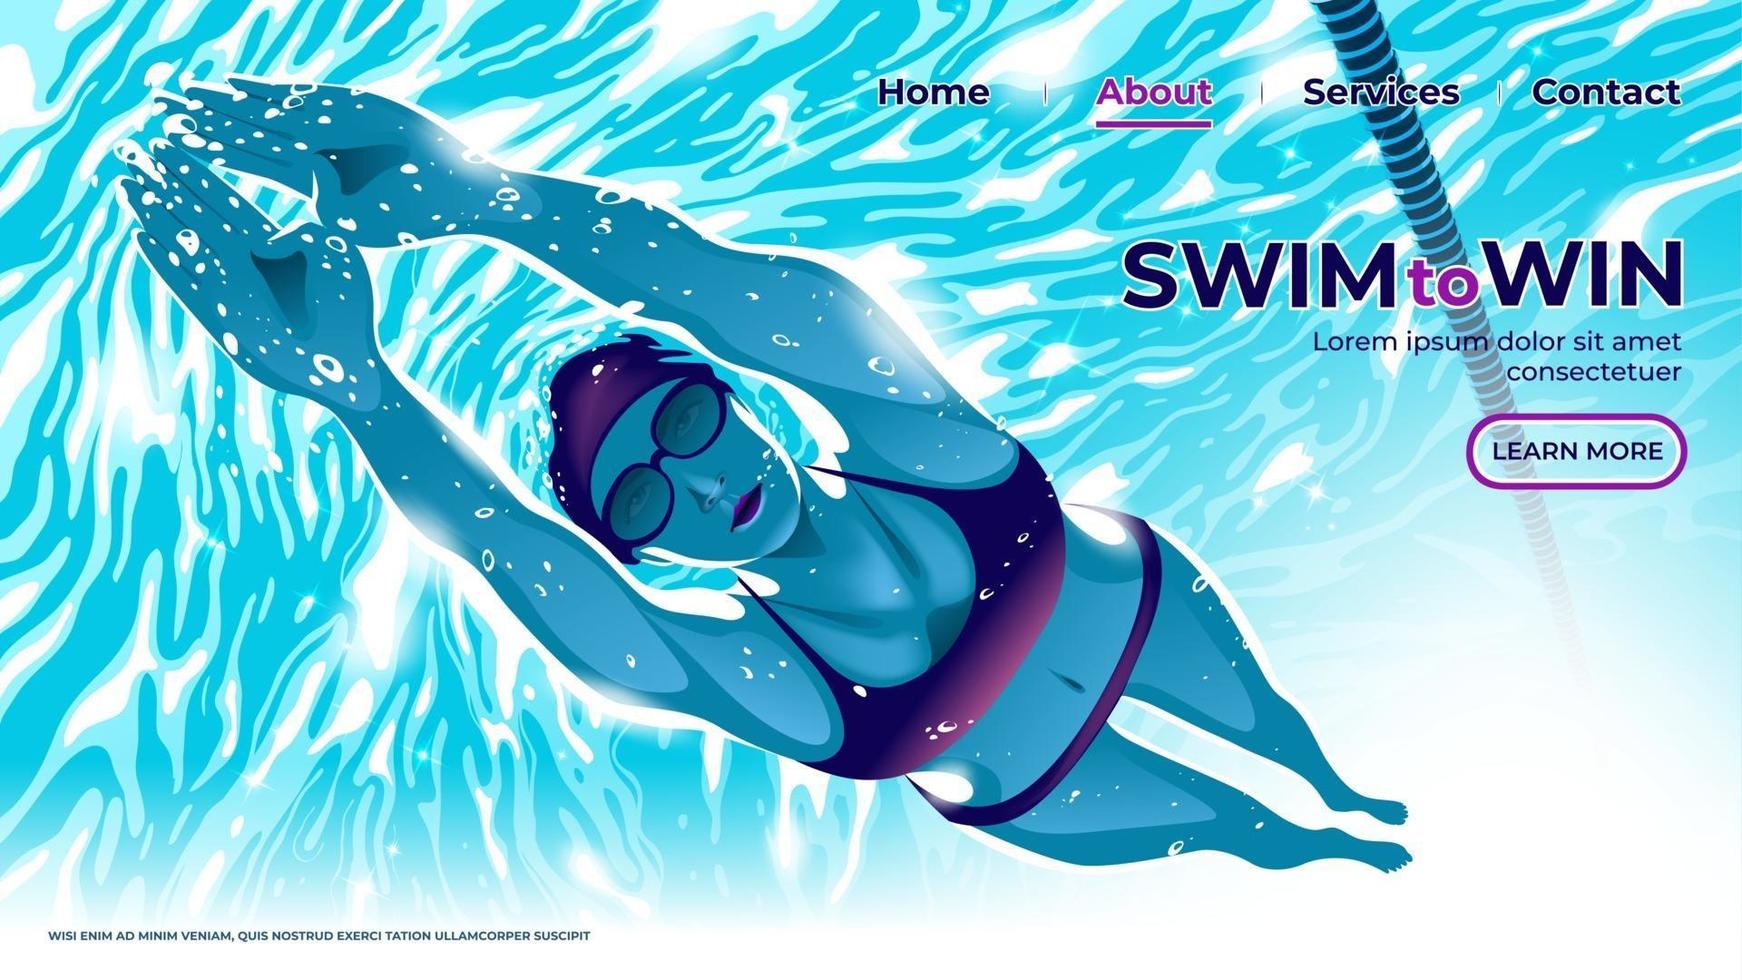 un'illustrazione vettoriale per l'interfaccia utente o la pagina di destinazione dell'atleta di nuoto femminile che si tuffa sott'acqua in piscina con determinazione negli occhi